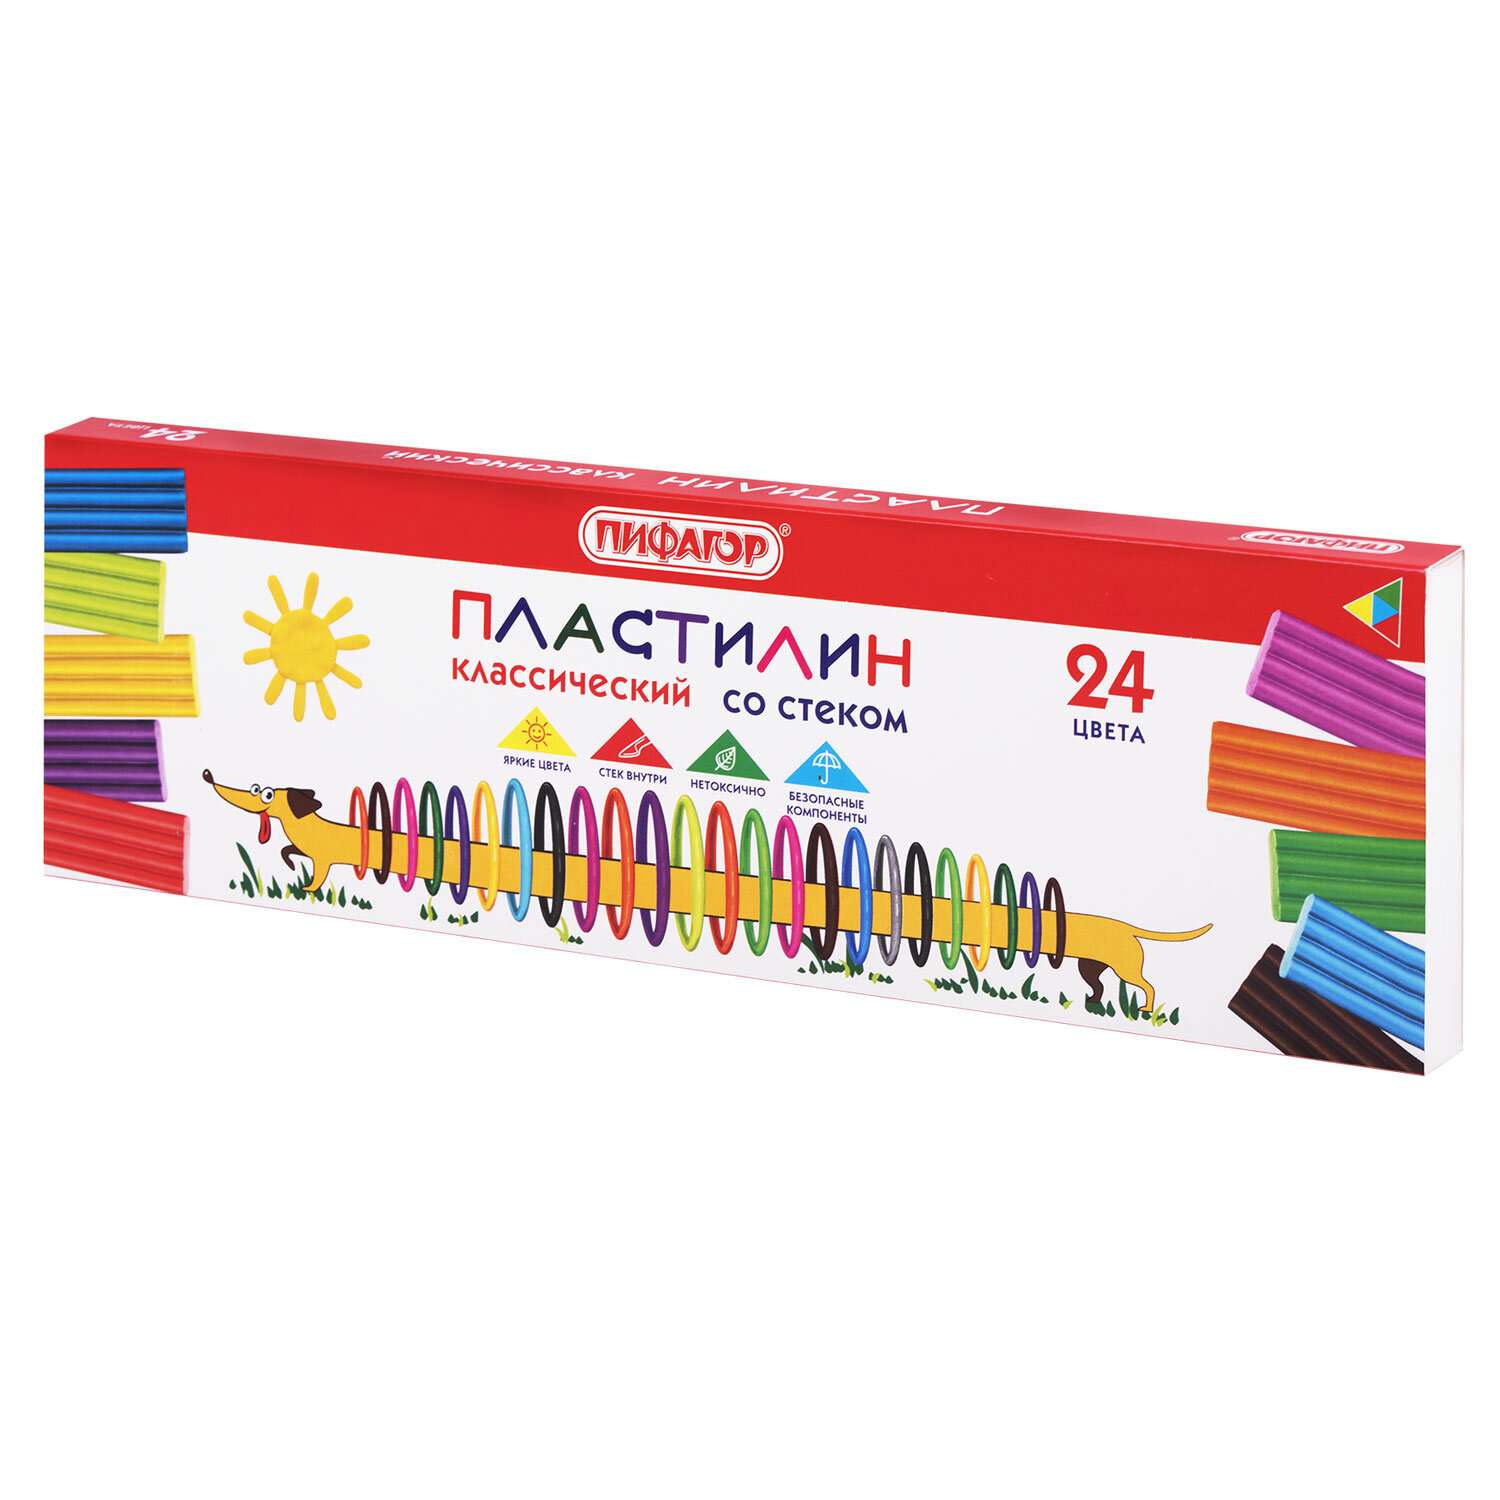 Пластилин Пифагор классический для детей 24 цвета - фото 6